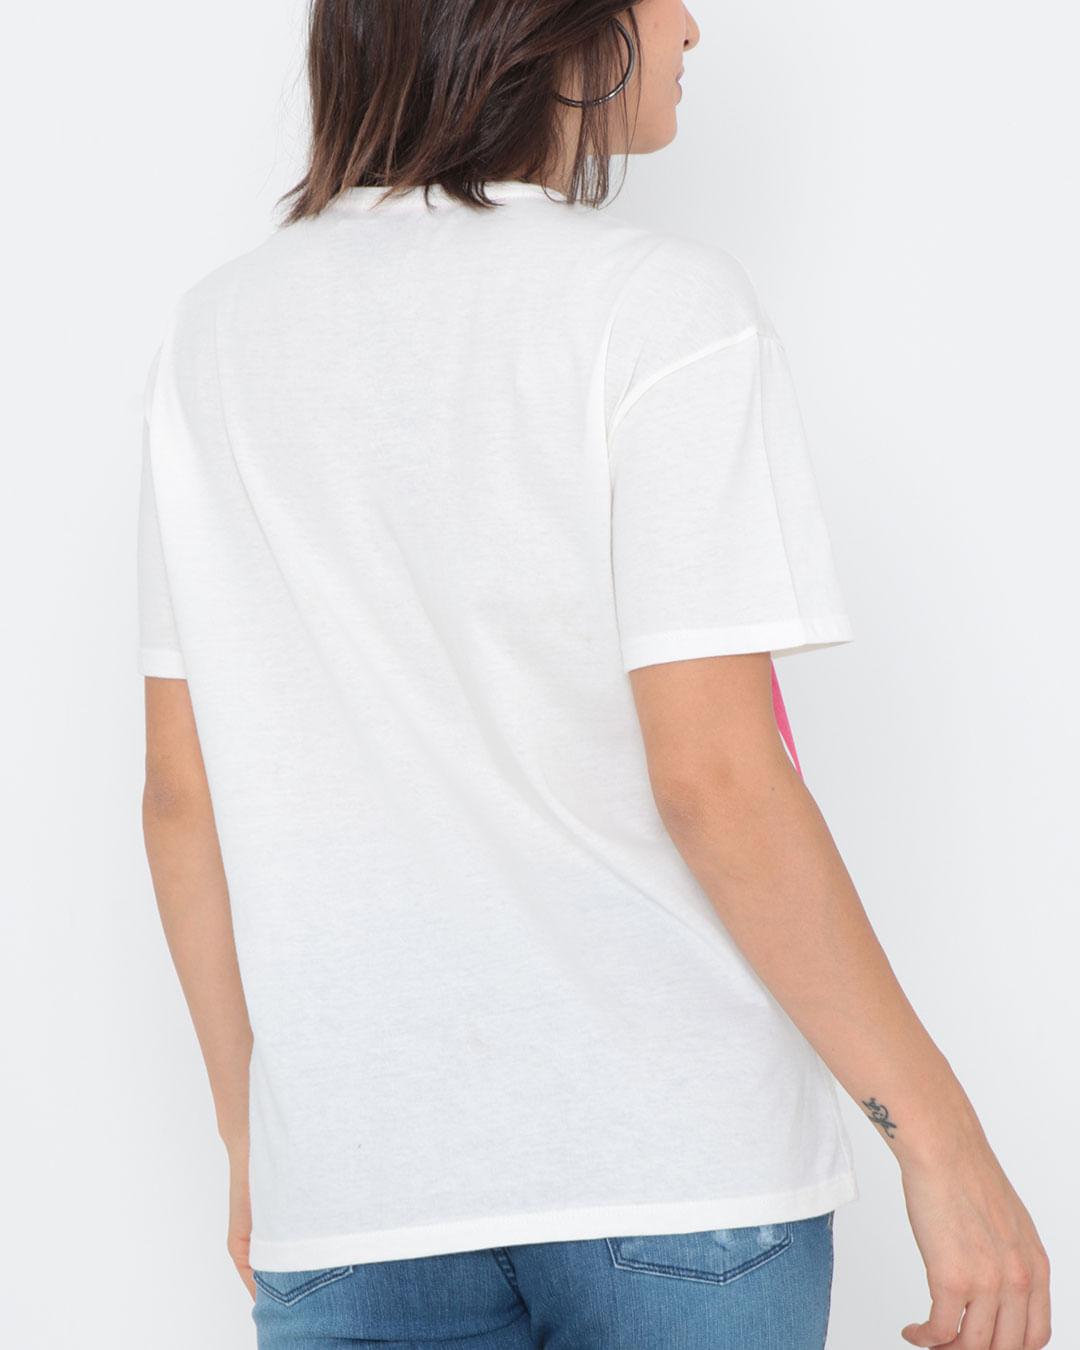 Camiseta-Estampa-Love-Off-White